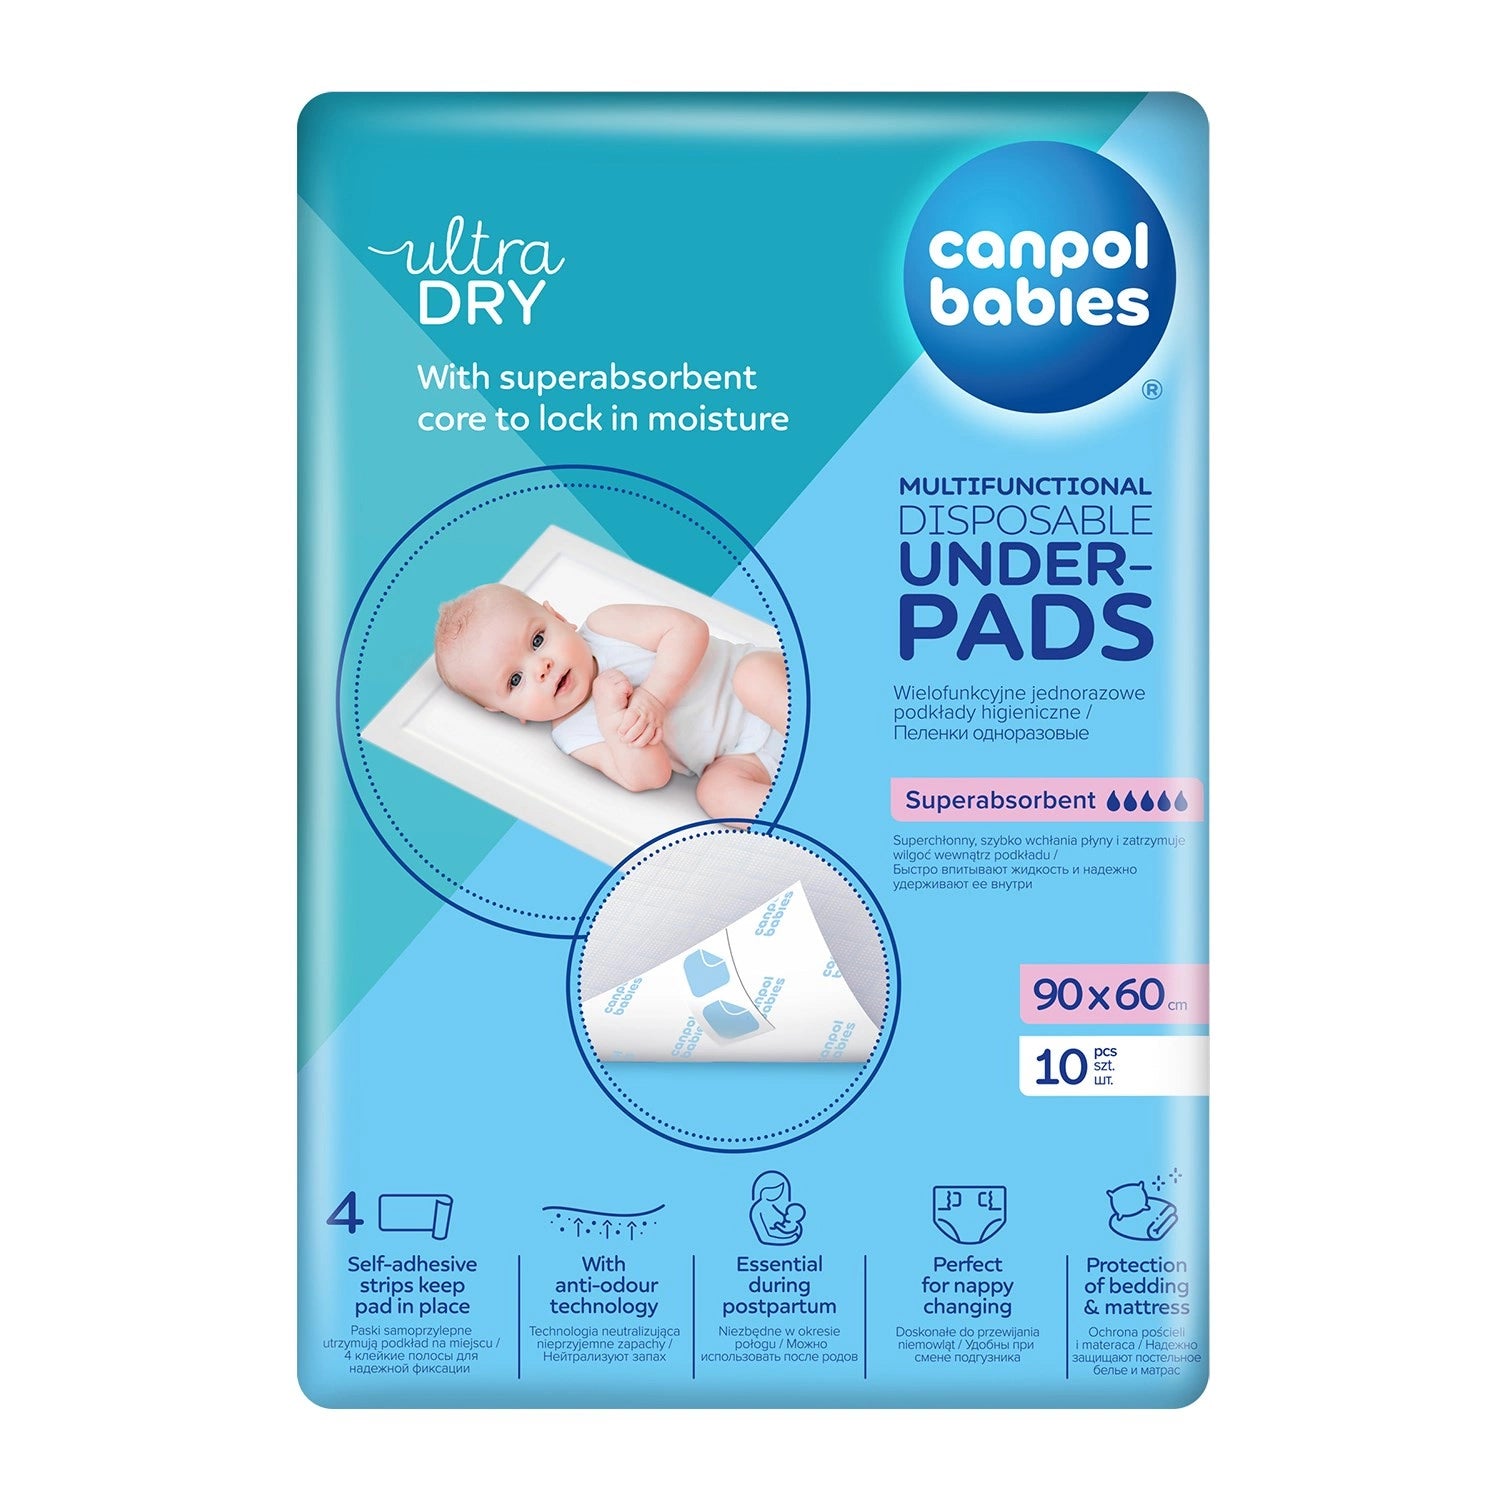 Canpol Babies: wielofunkcyjne samoprzylepne podkłady higieniczne 90x60 cm 10 szt.